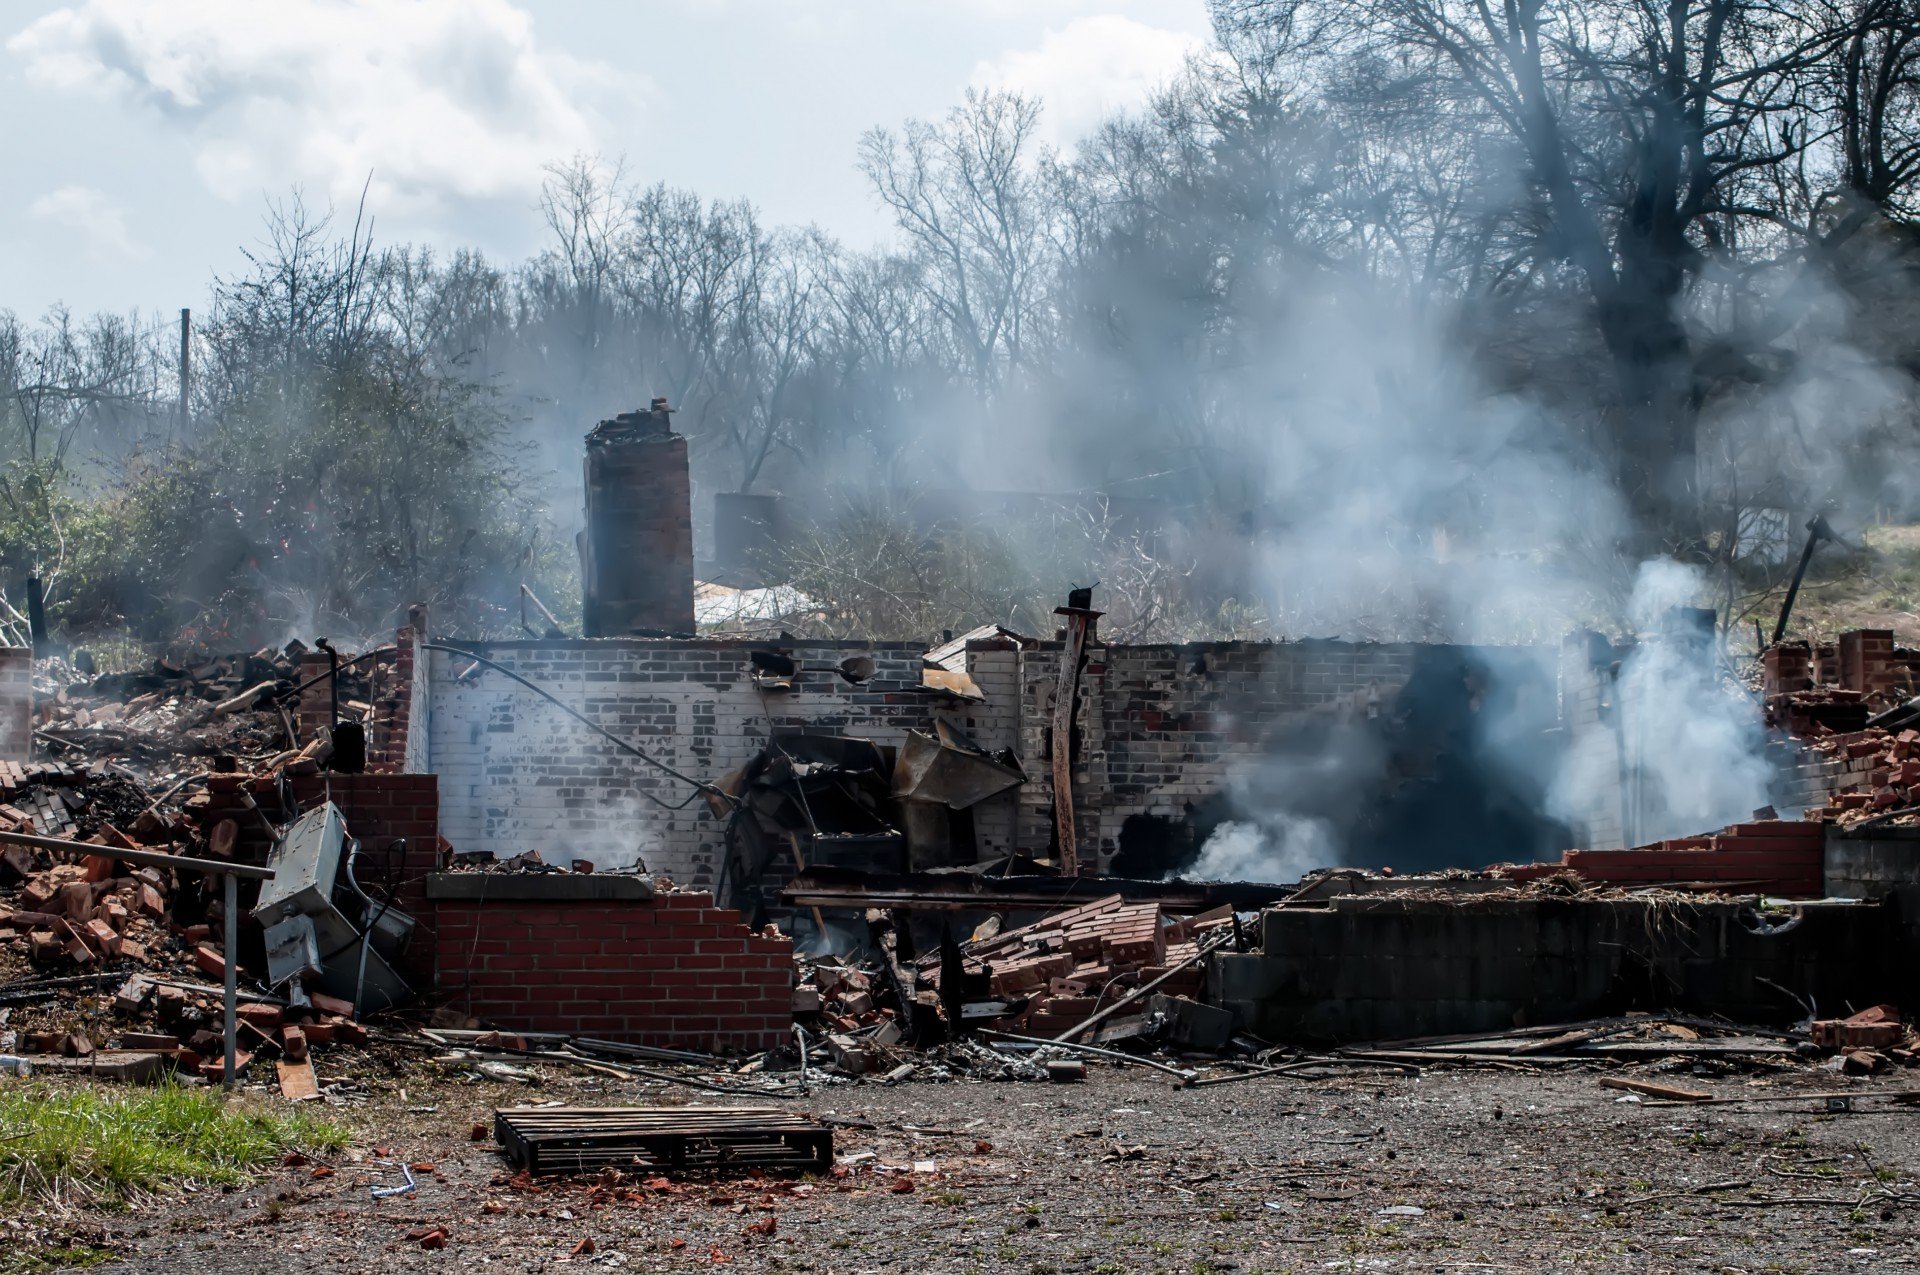 Casa en ruinas tras un incendio. | Imagen: Public Domain Pictures